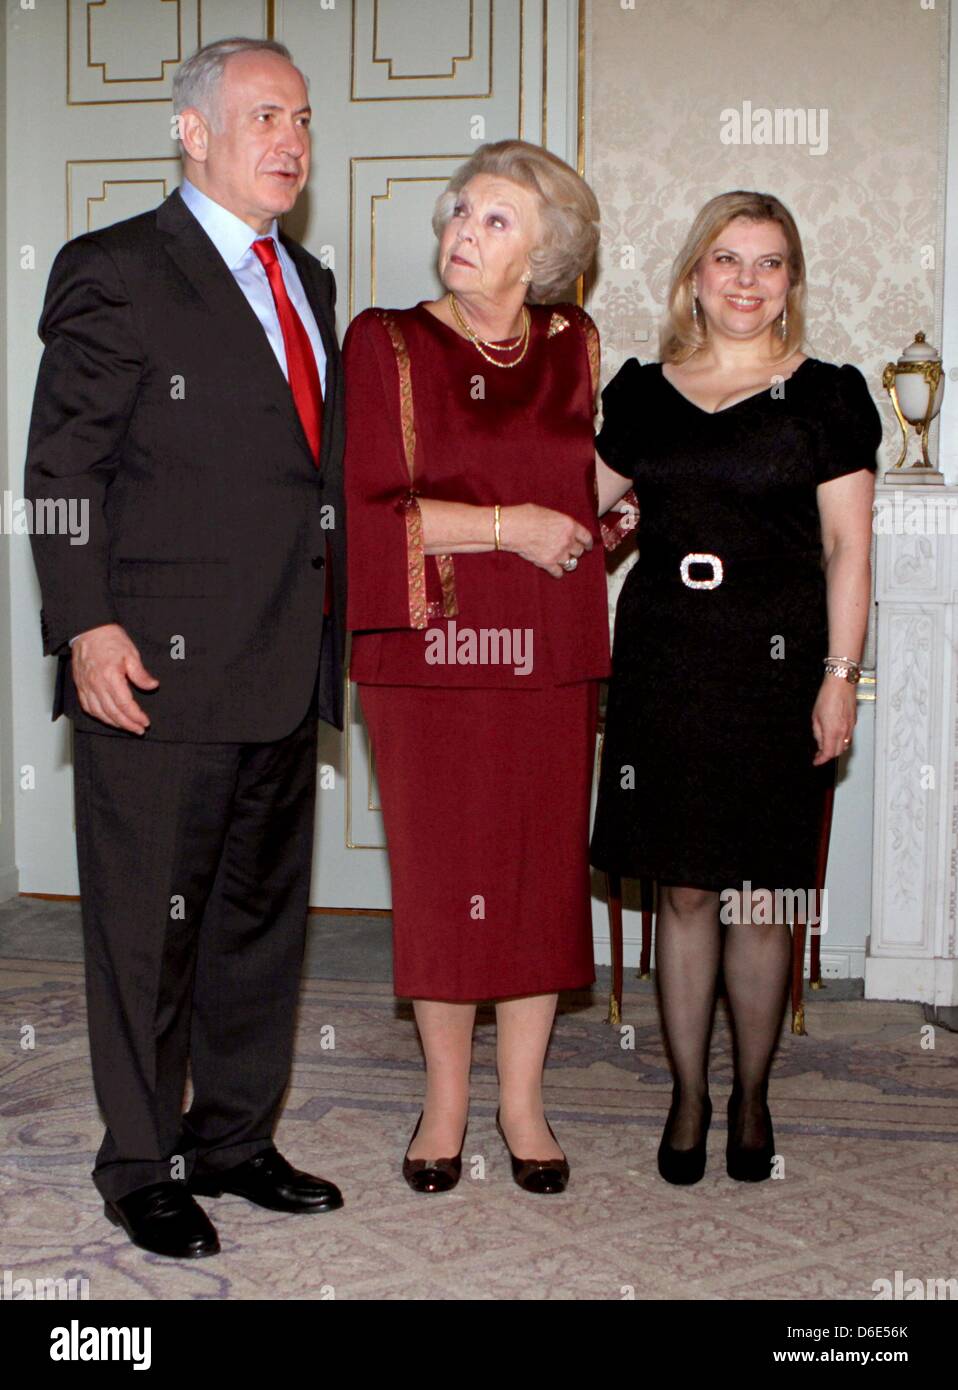 Israel's Prime Minister Benjamin Netanyahu (L) and his wife Sara (R